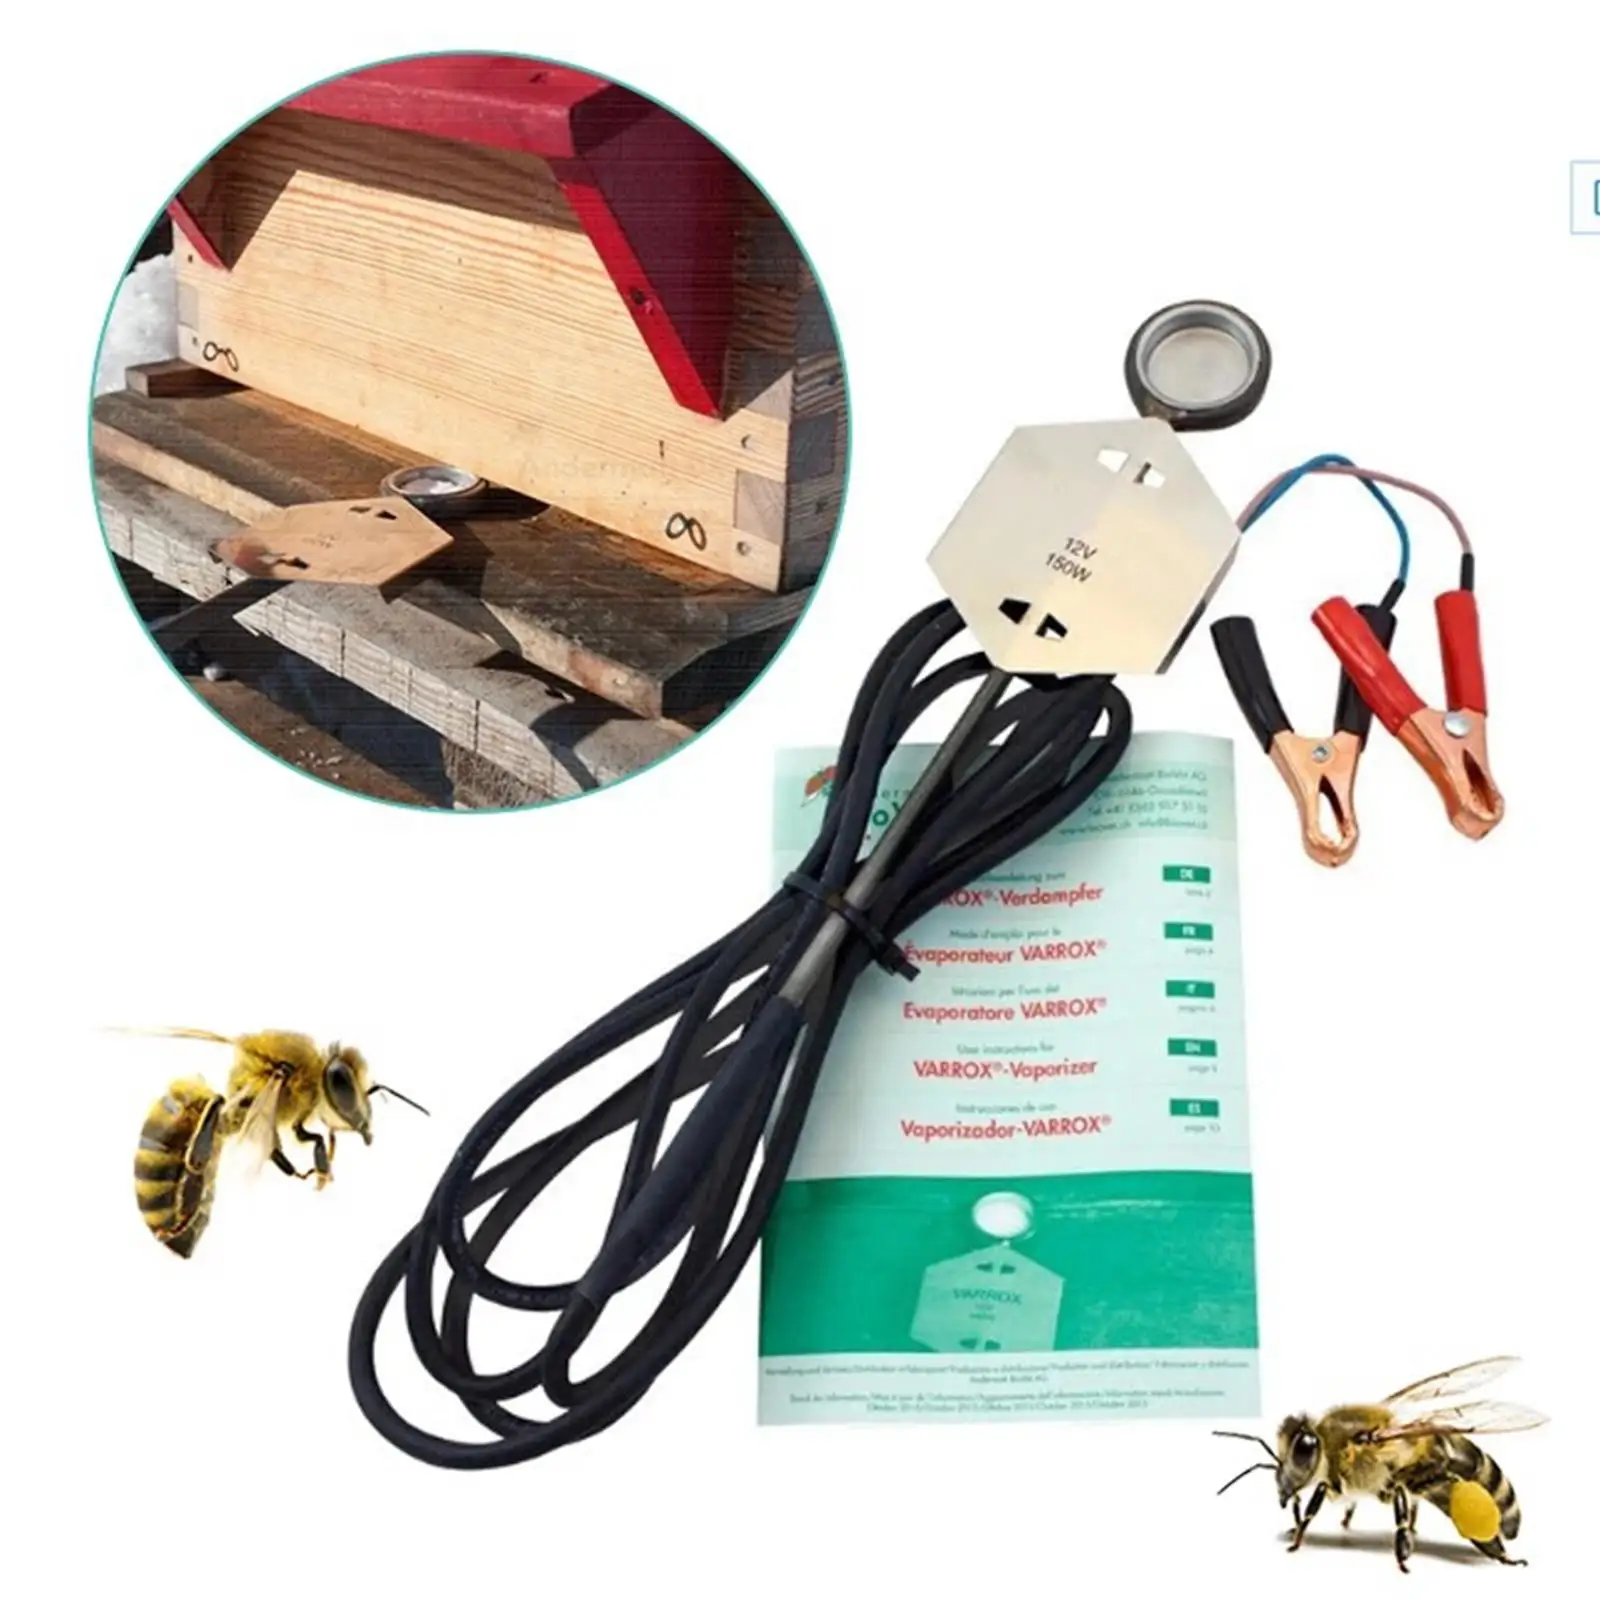 Stainless steel Vaporiser Beekeeping Equipment Tool Bee Evaporator for Household Garden Beekeeping Accessories Beekeeper